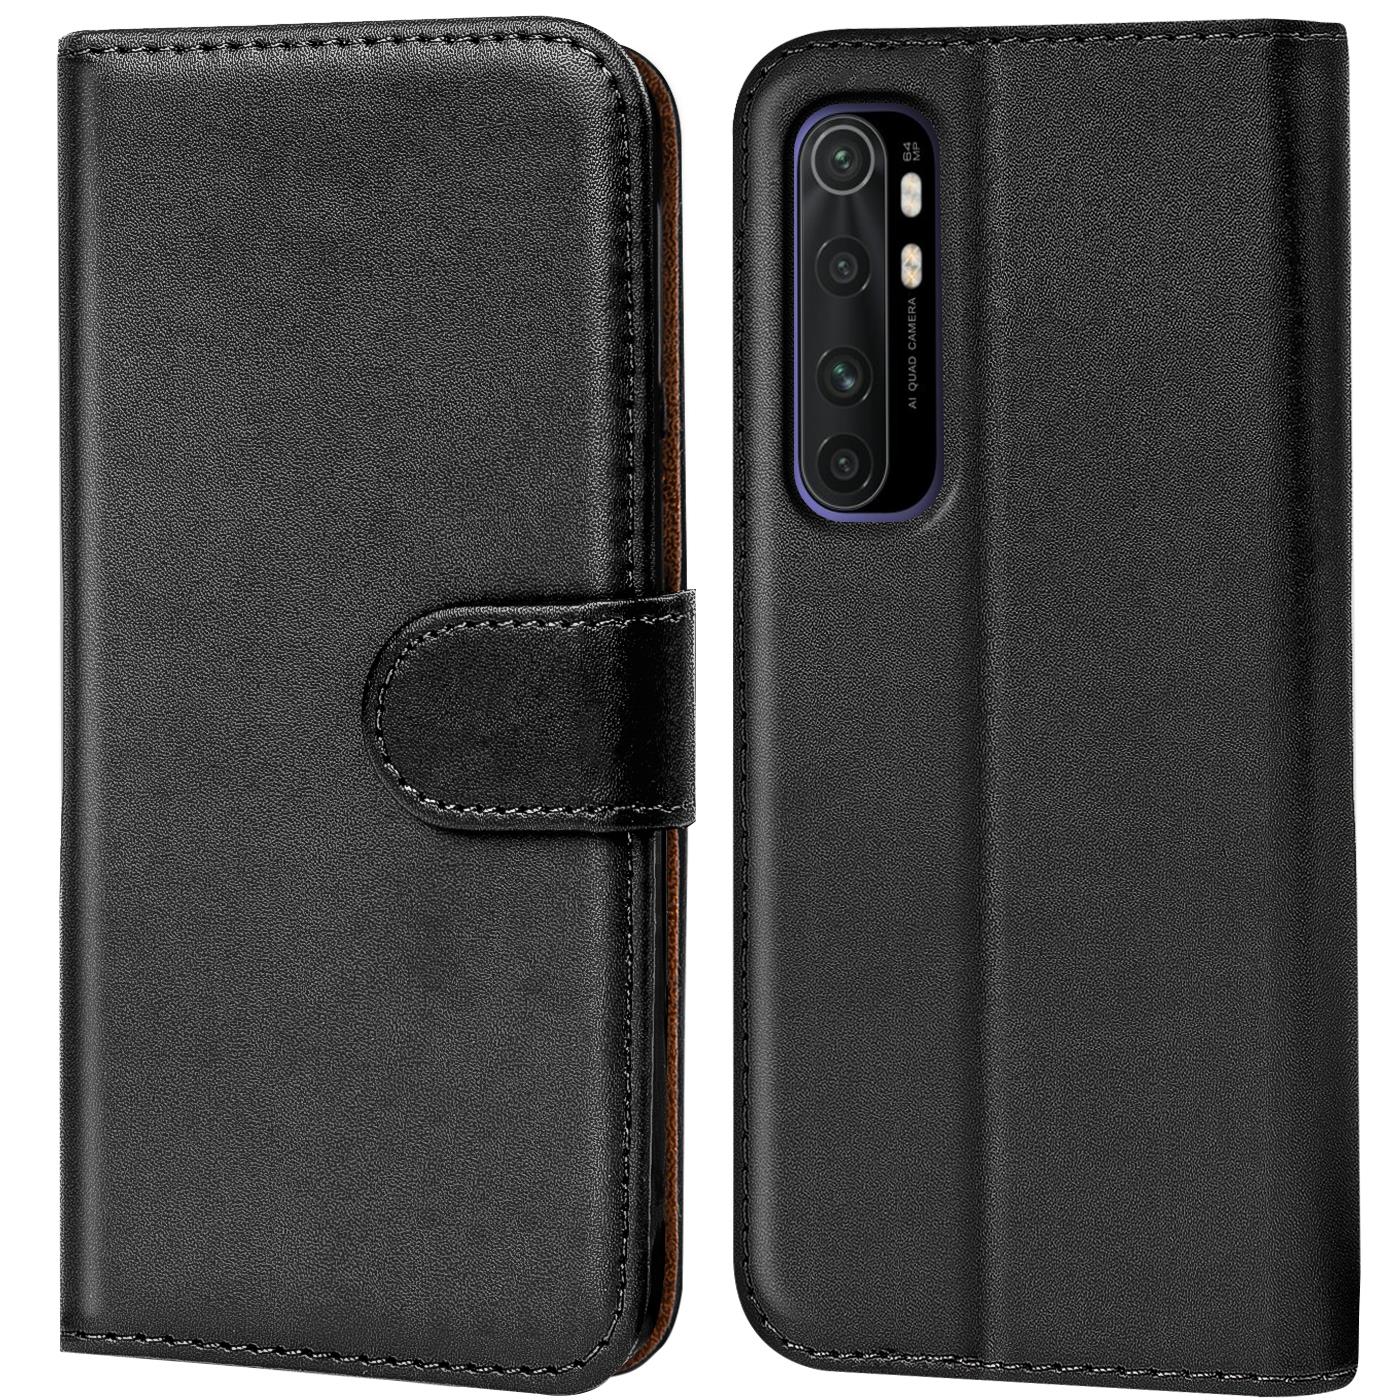 Indexbild 28 - Schutz Hülle Für Xiaomi Mi Handy Tasche Flip Case Cover Wallet Book Hülle Etui